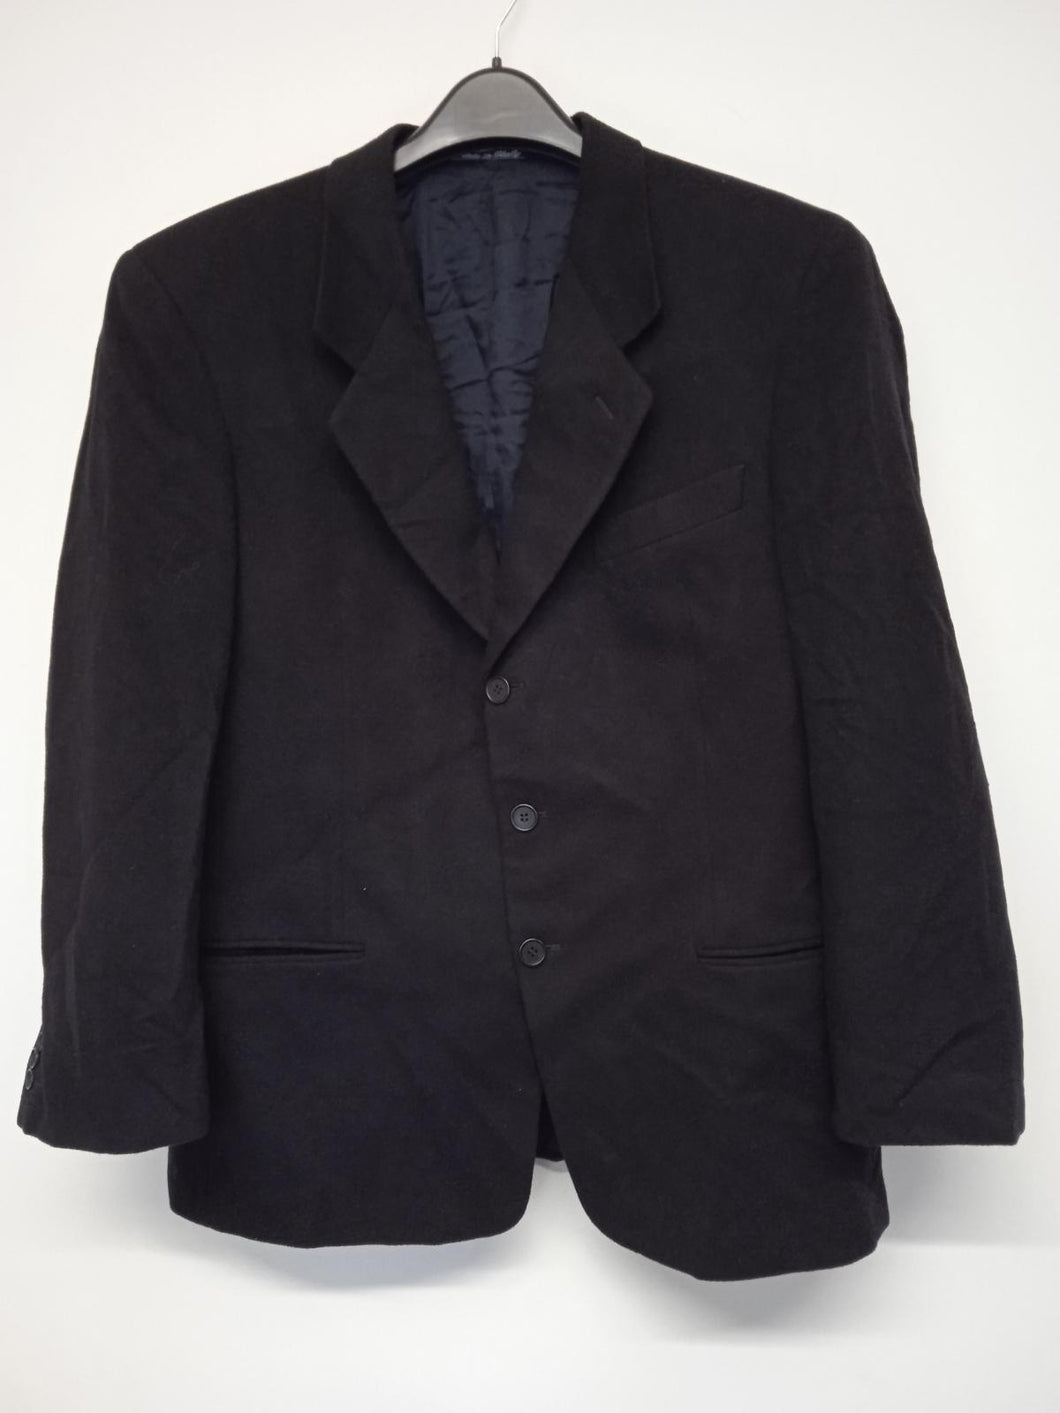 GIORGIO ARMANI Men's Black Cashmere Long Sleeve Single-Breasted Jacket IT44 UK34